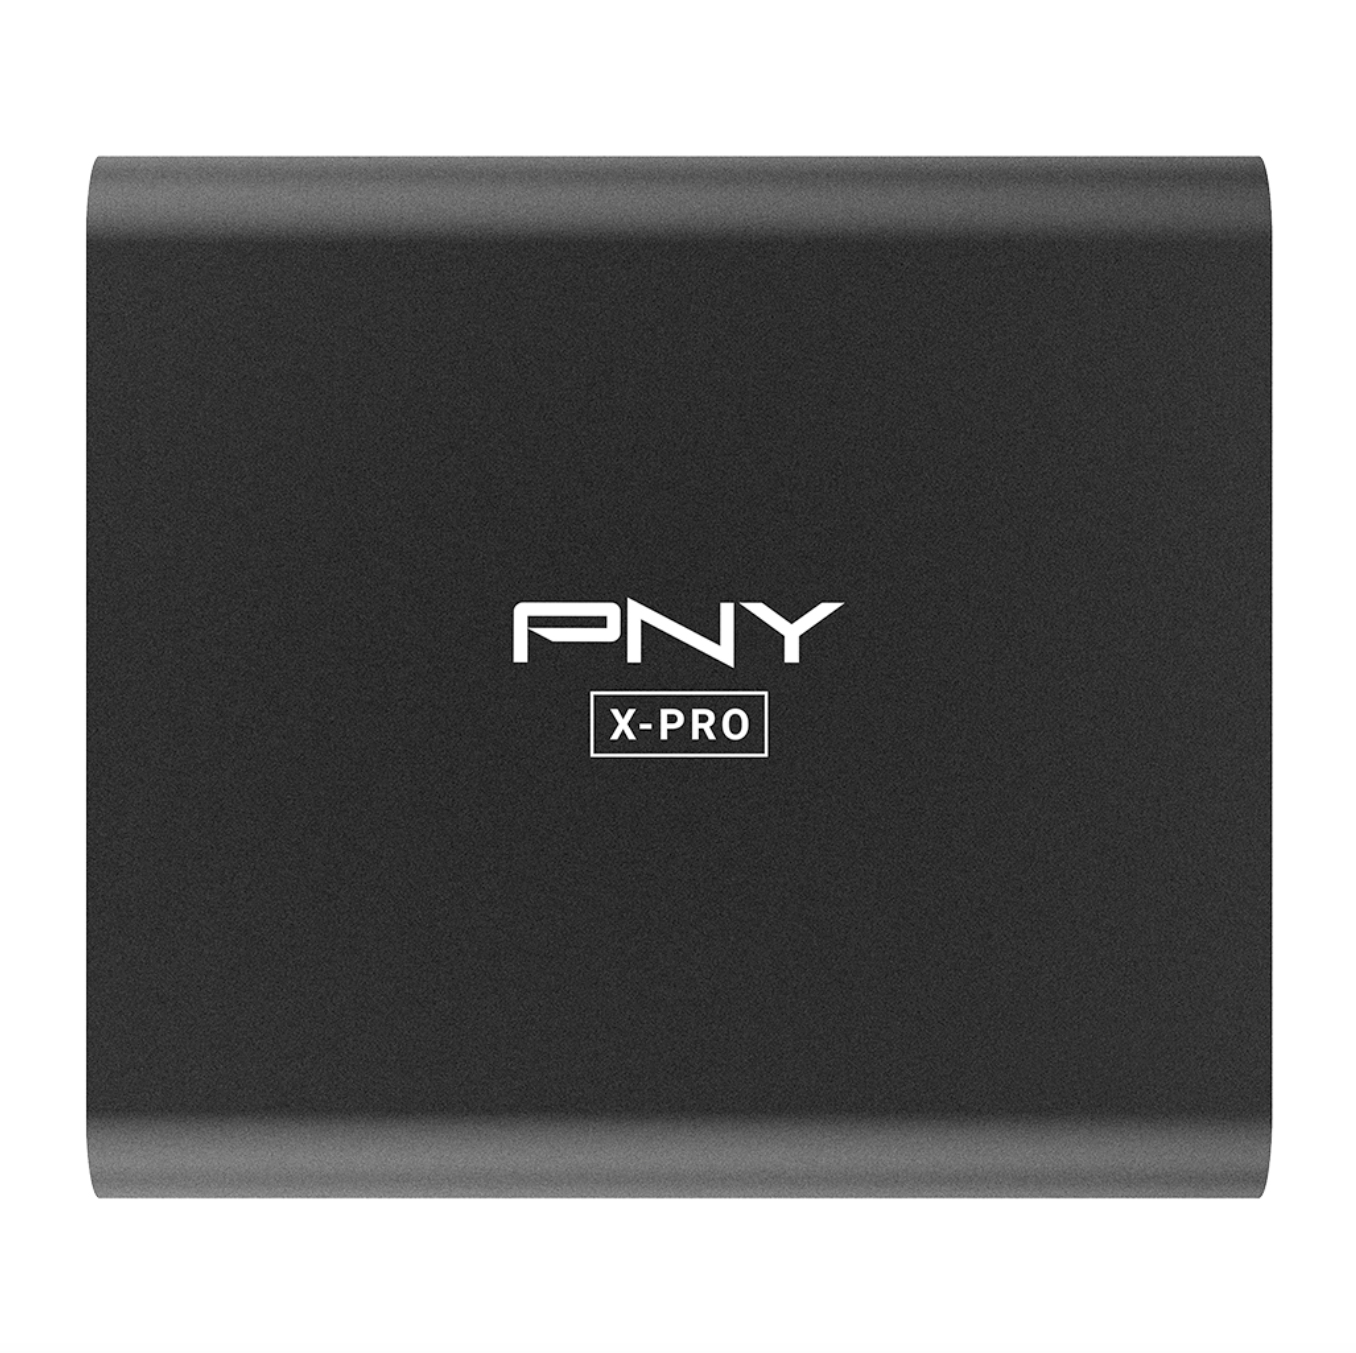 PNY X-PRO 500 GB Black